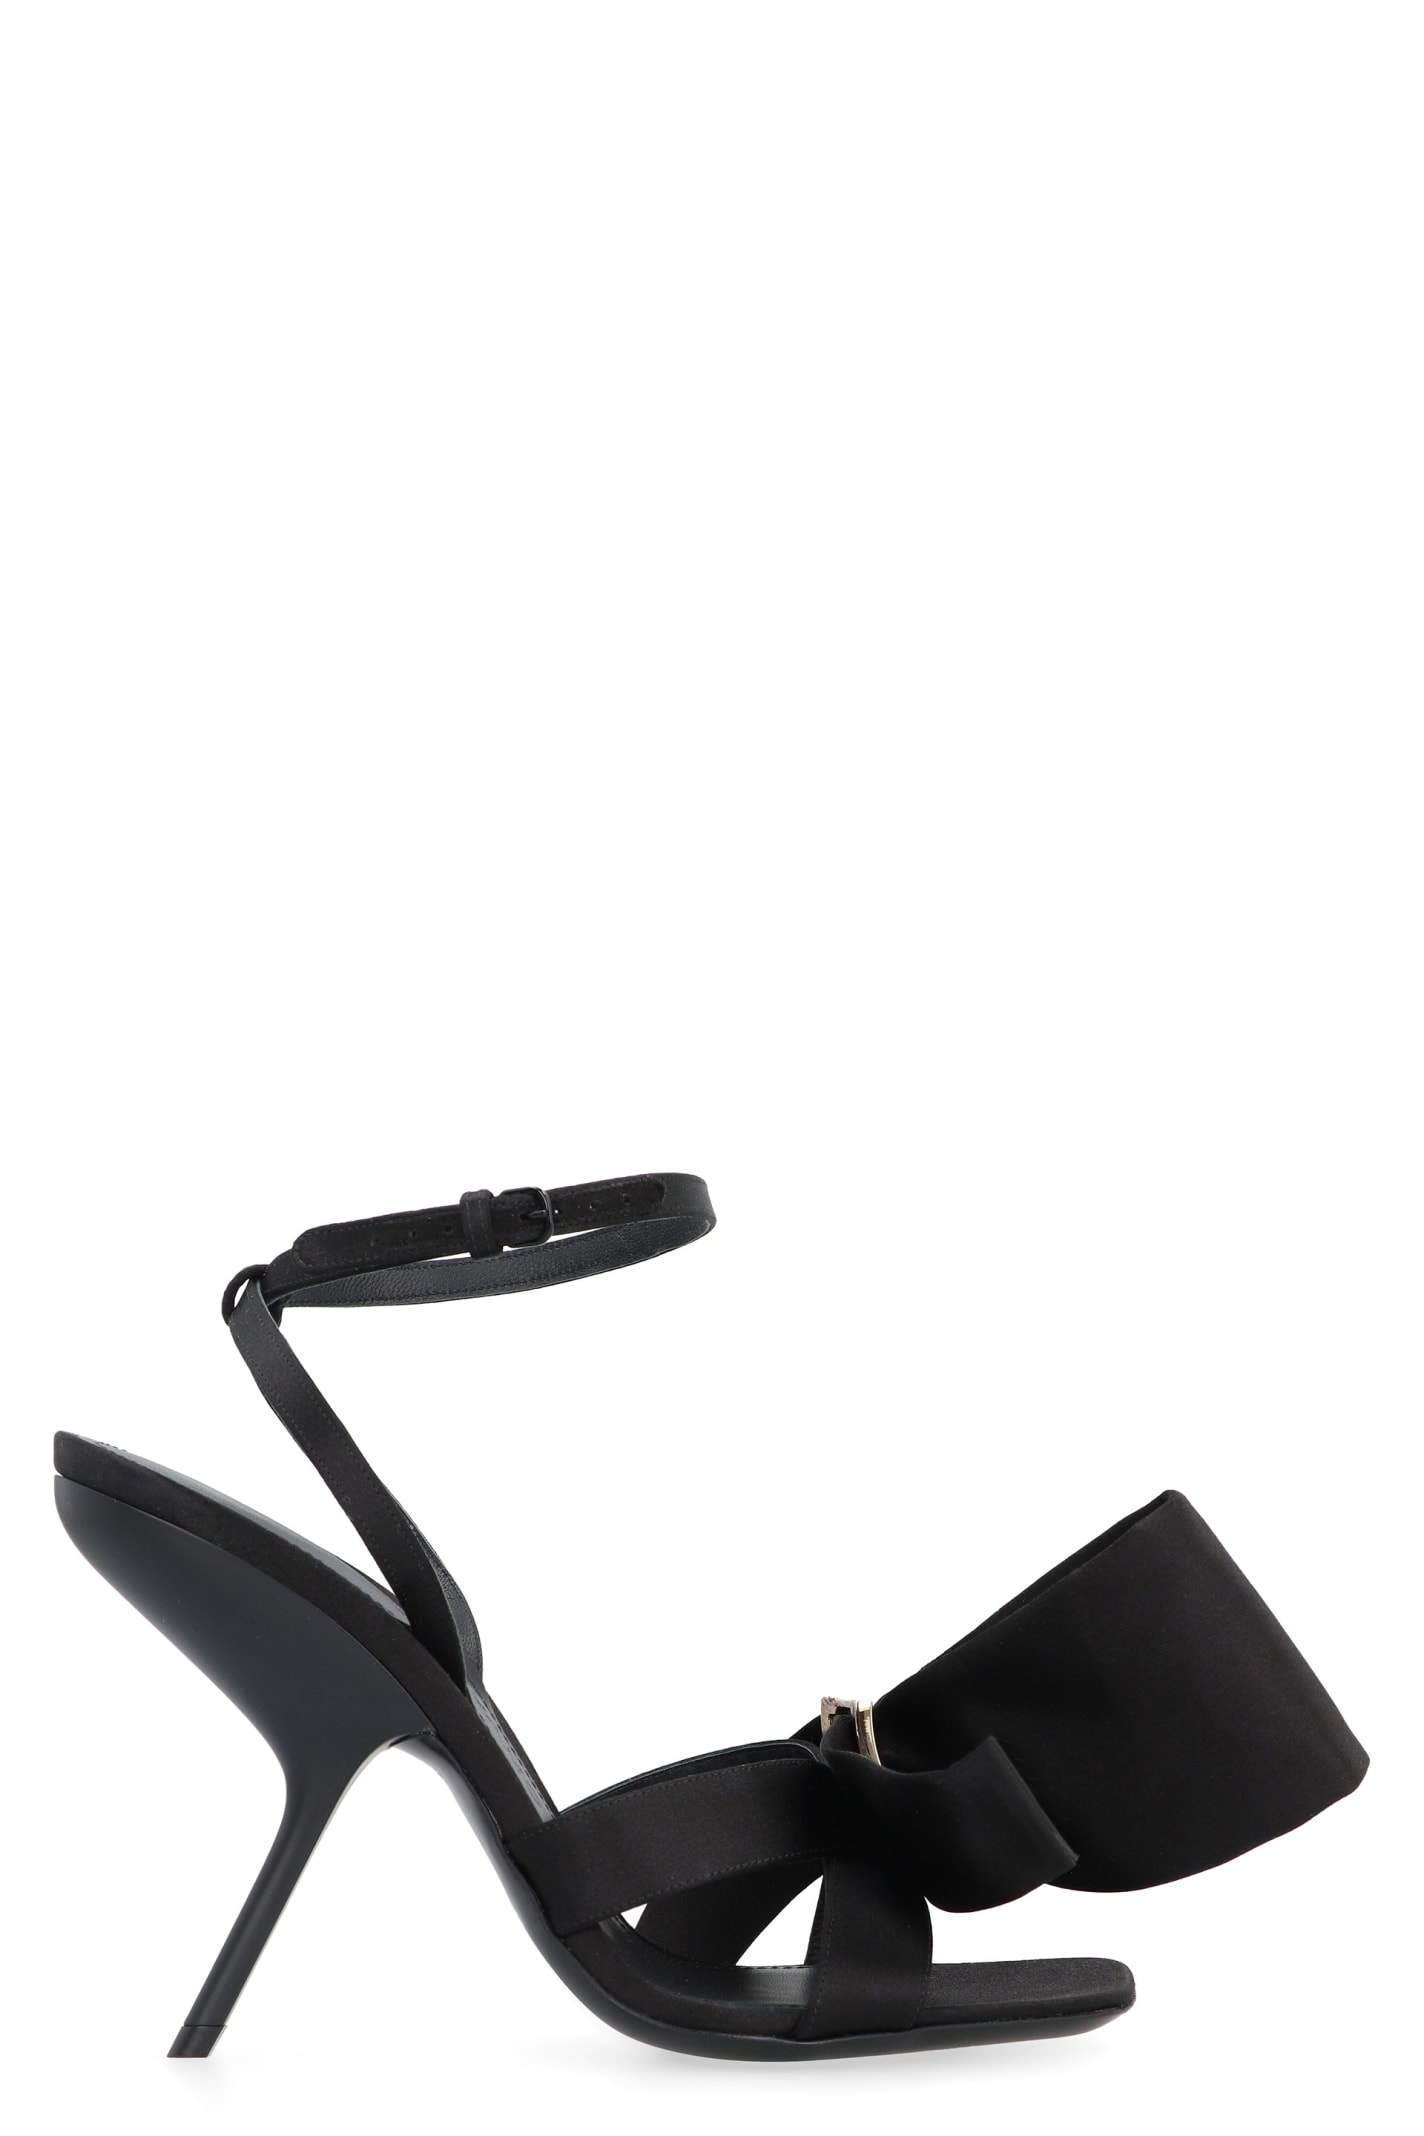 Shop Ferragamo Helena Satin Sandals In Black